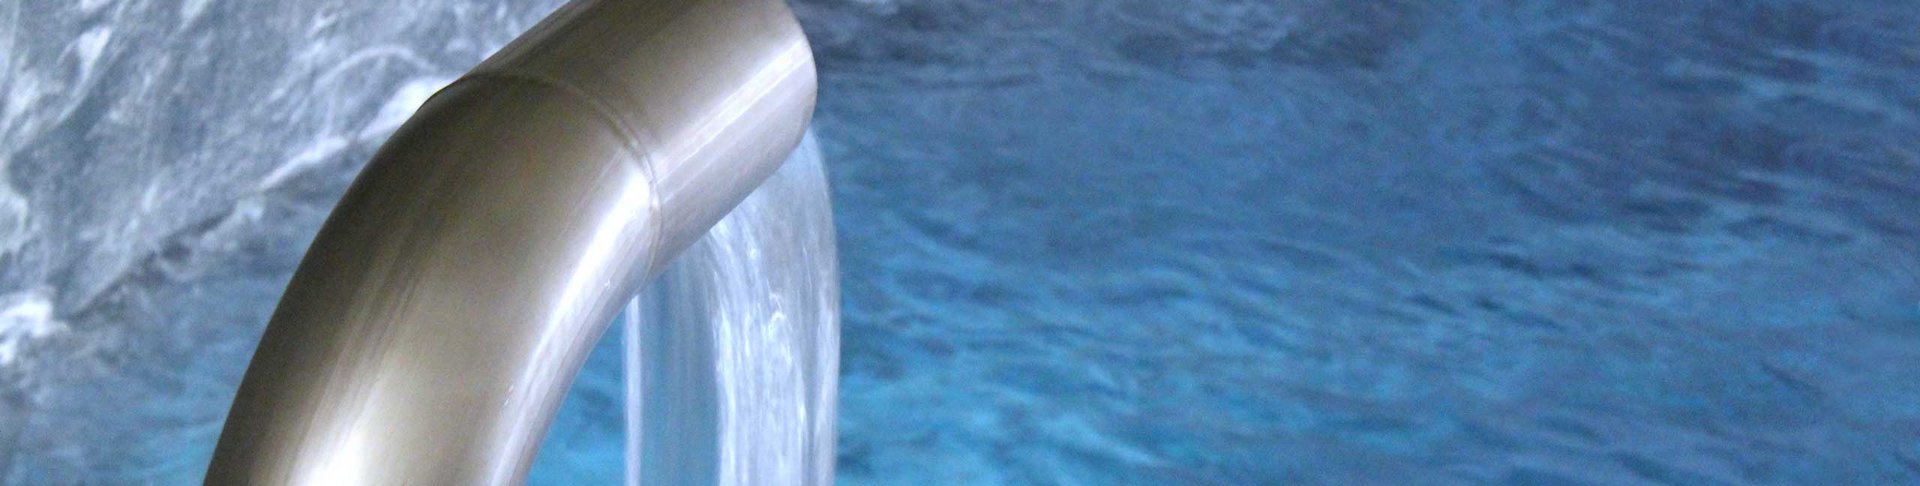 Wasser fließt aus einem silbernen Rohr in ein Wasserbecken.